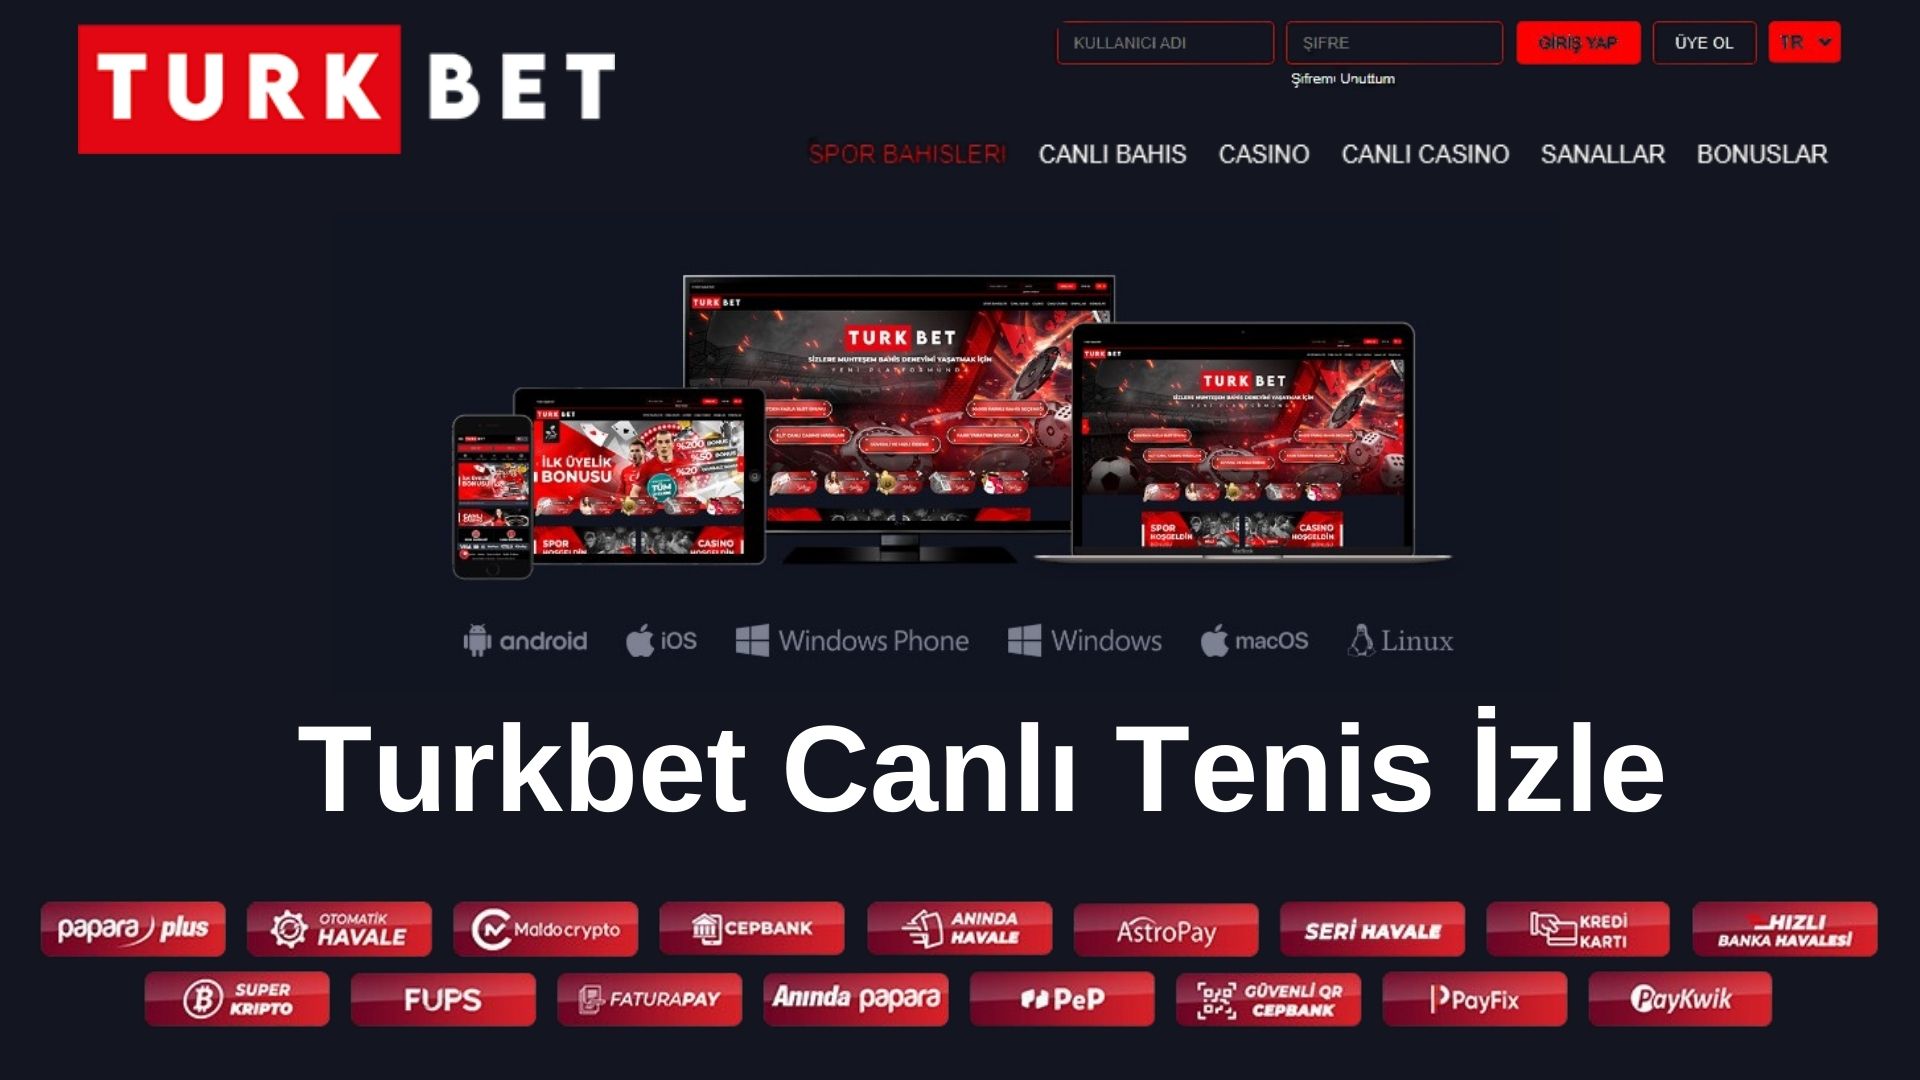 Turkbet Canlı Tenis İzle